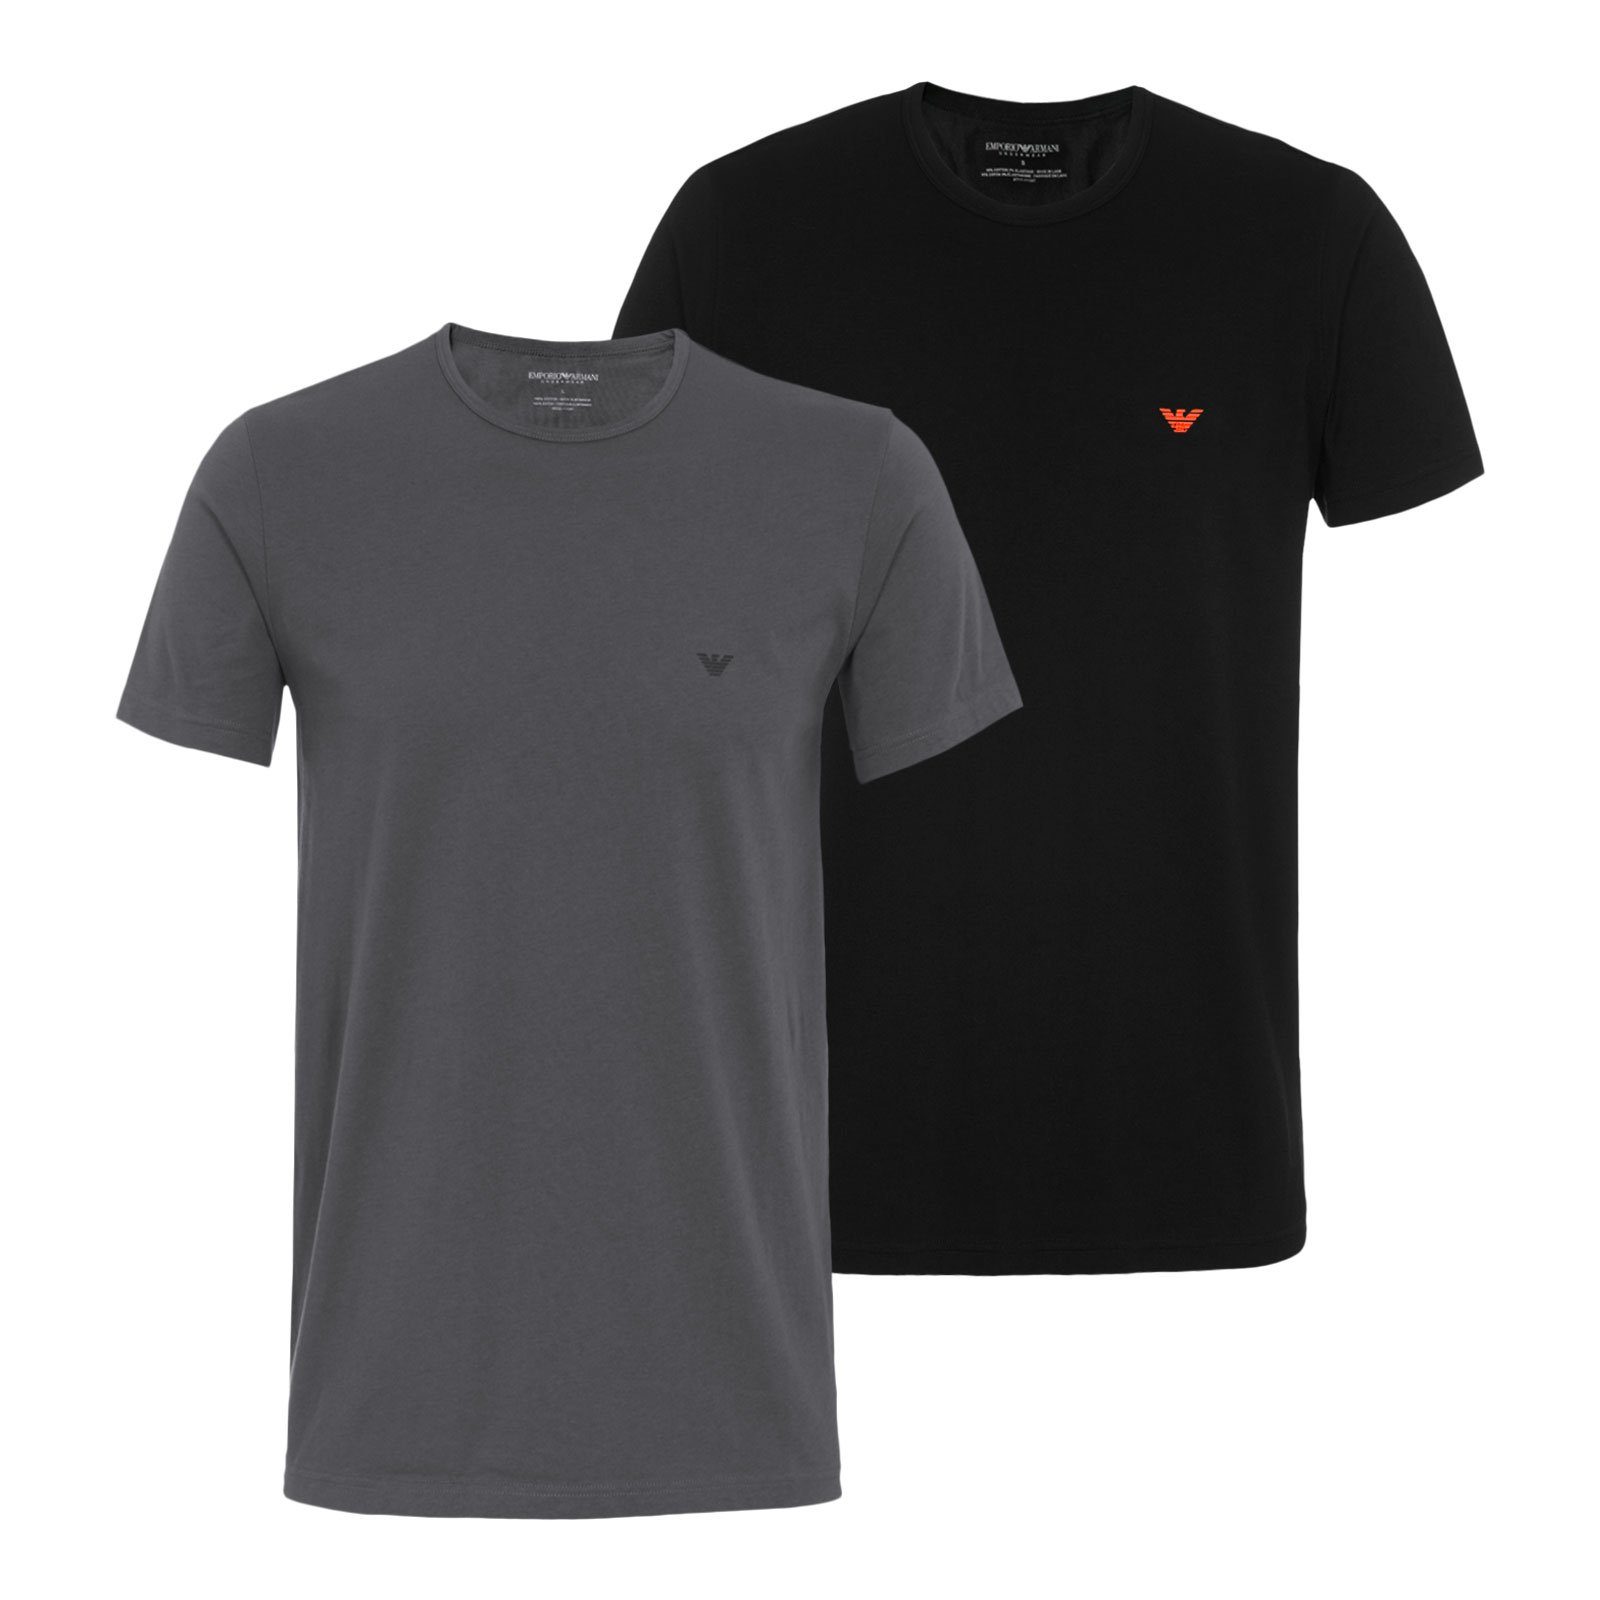 Emporio Armani T-Shirt Crew Neck T-Shirt Cotton mit Rundhalsausschnitt 41720 black / anthracite